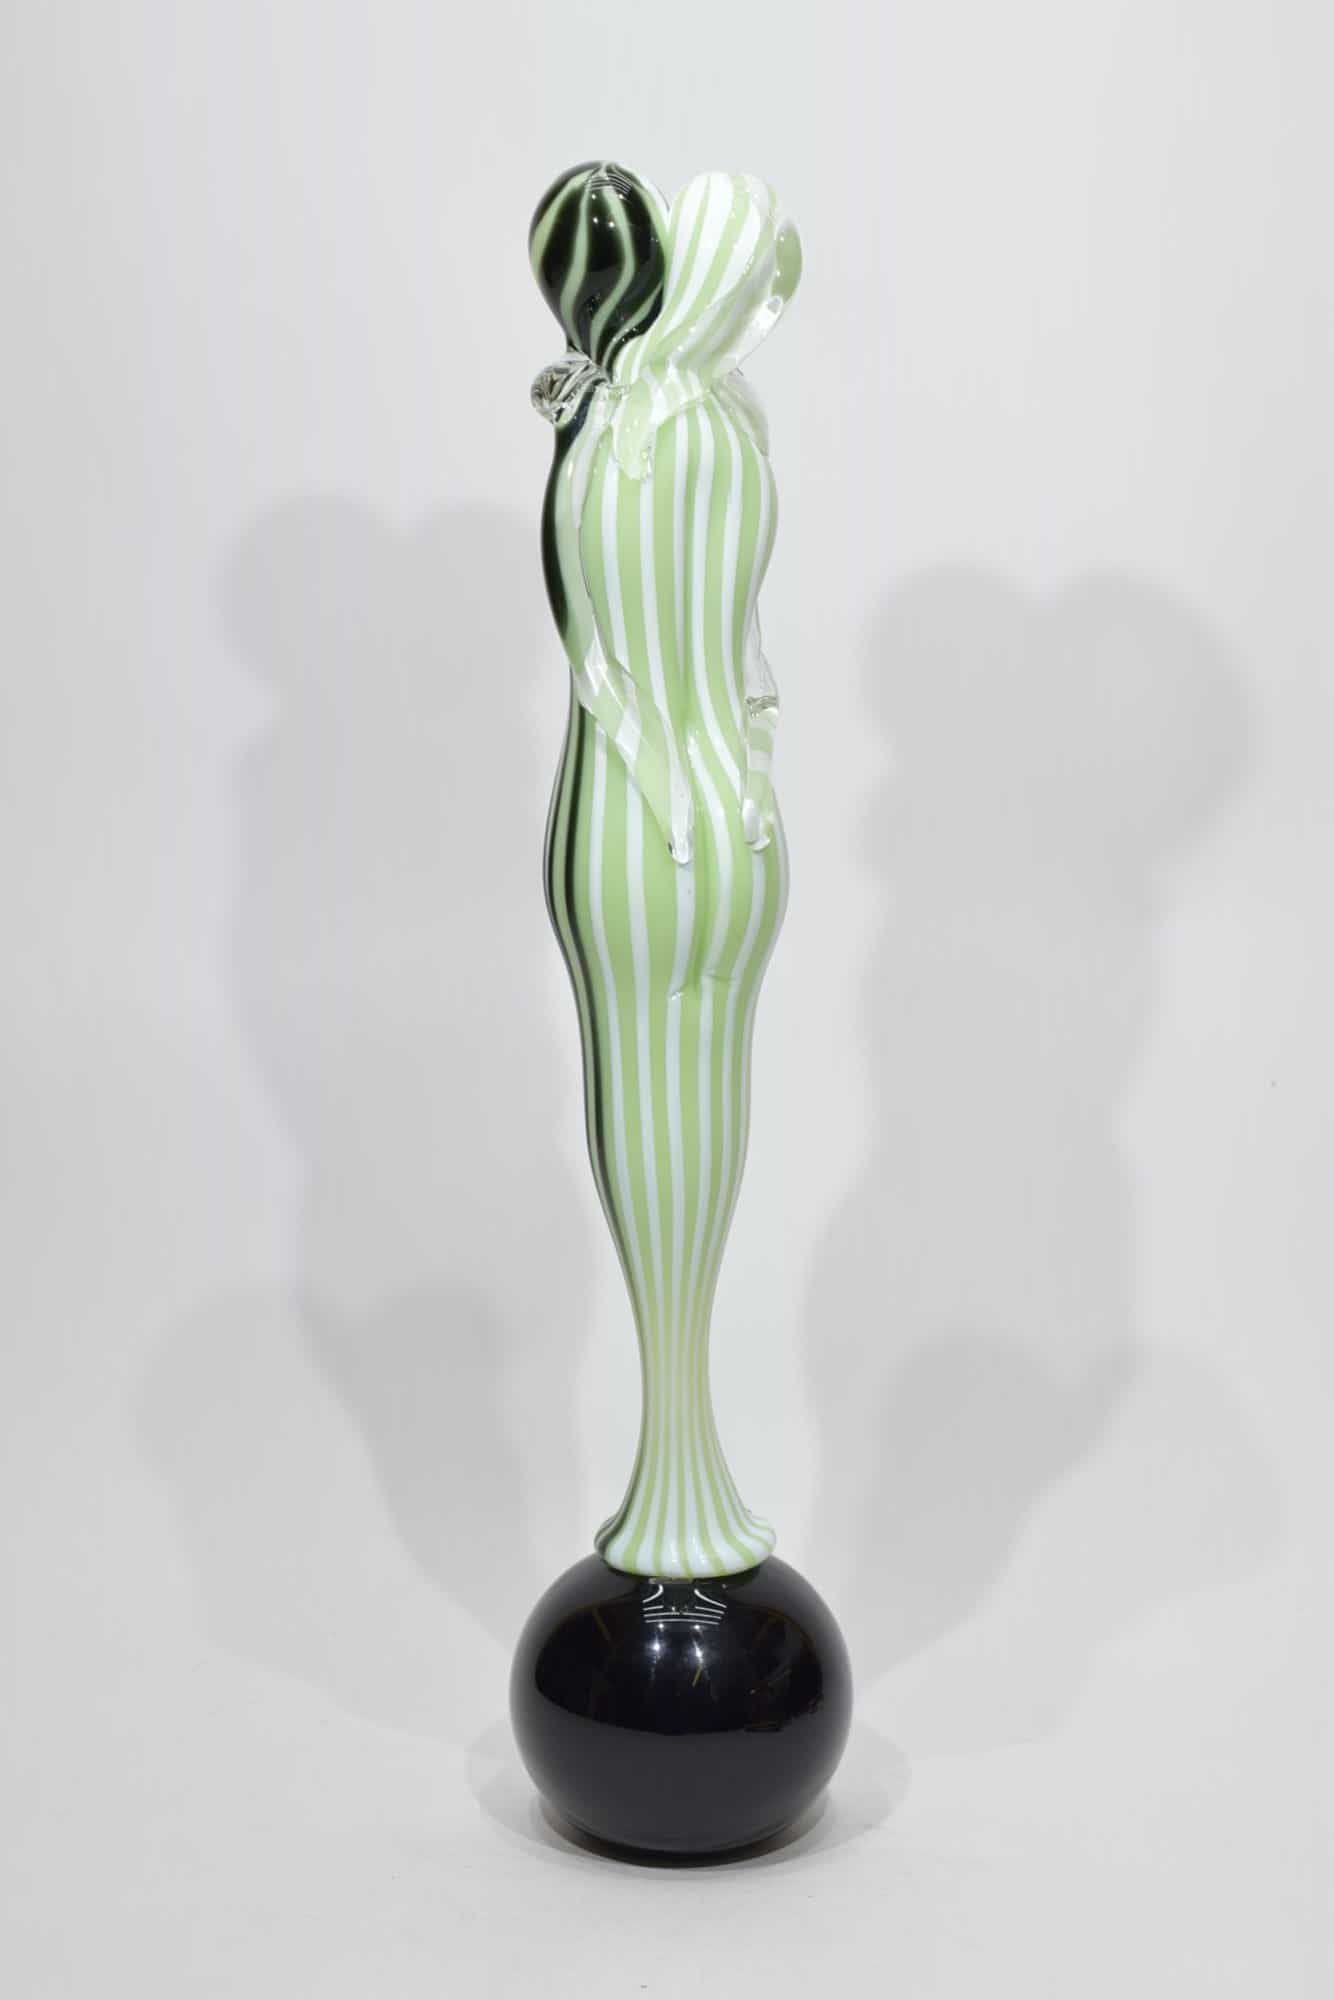 sculpture-lovers-watermark-glass-Murano-glass-10605